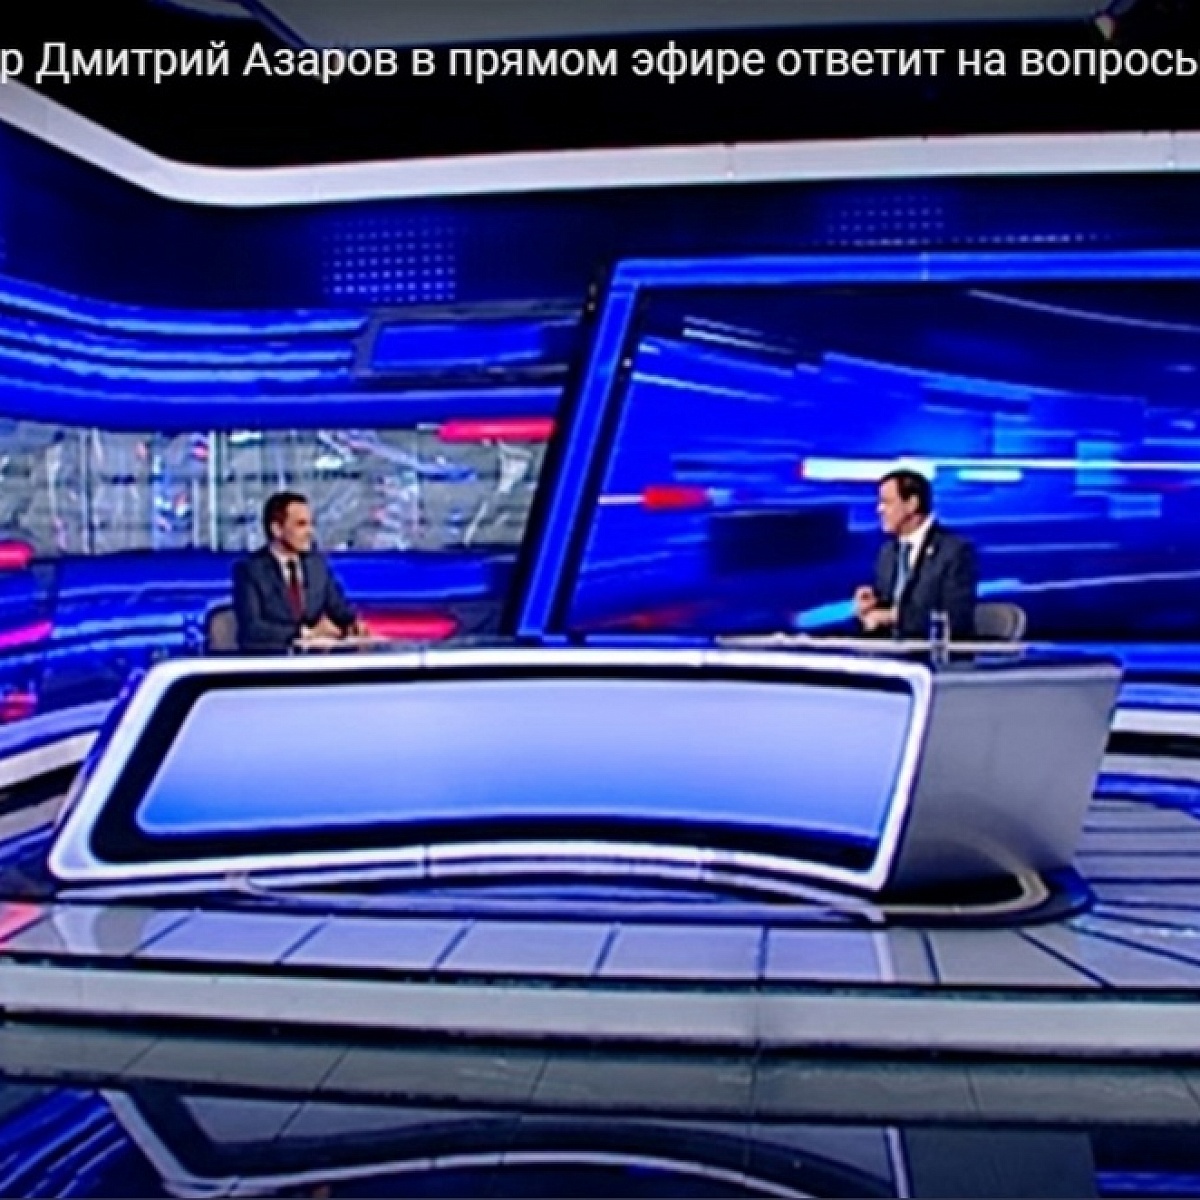 Главная тема: Губернатор Дмитрий Азаров в прямом эфире ответит на вопросы жителей региона